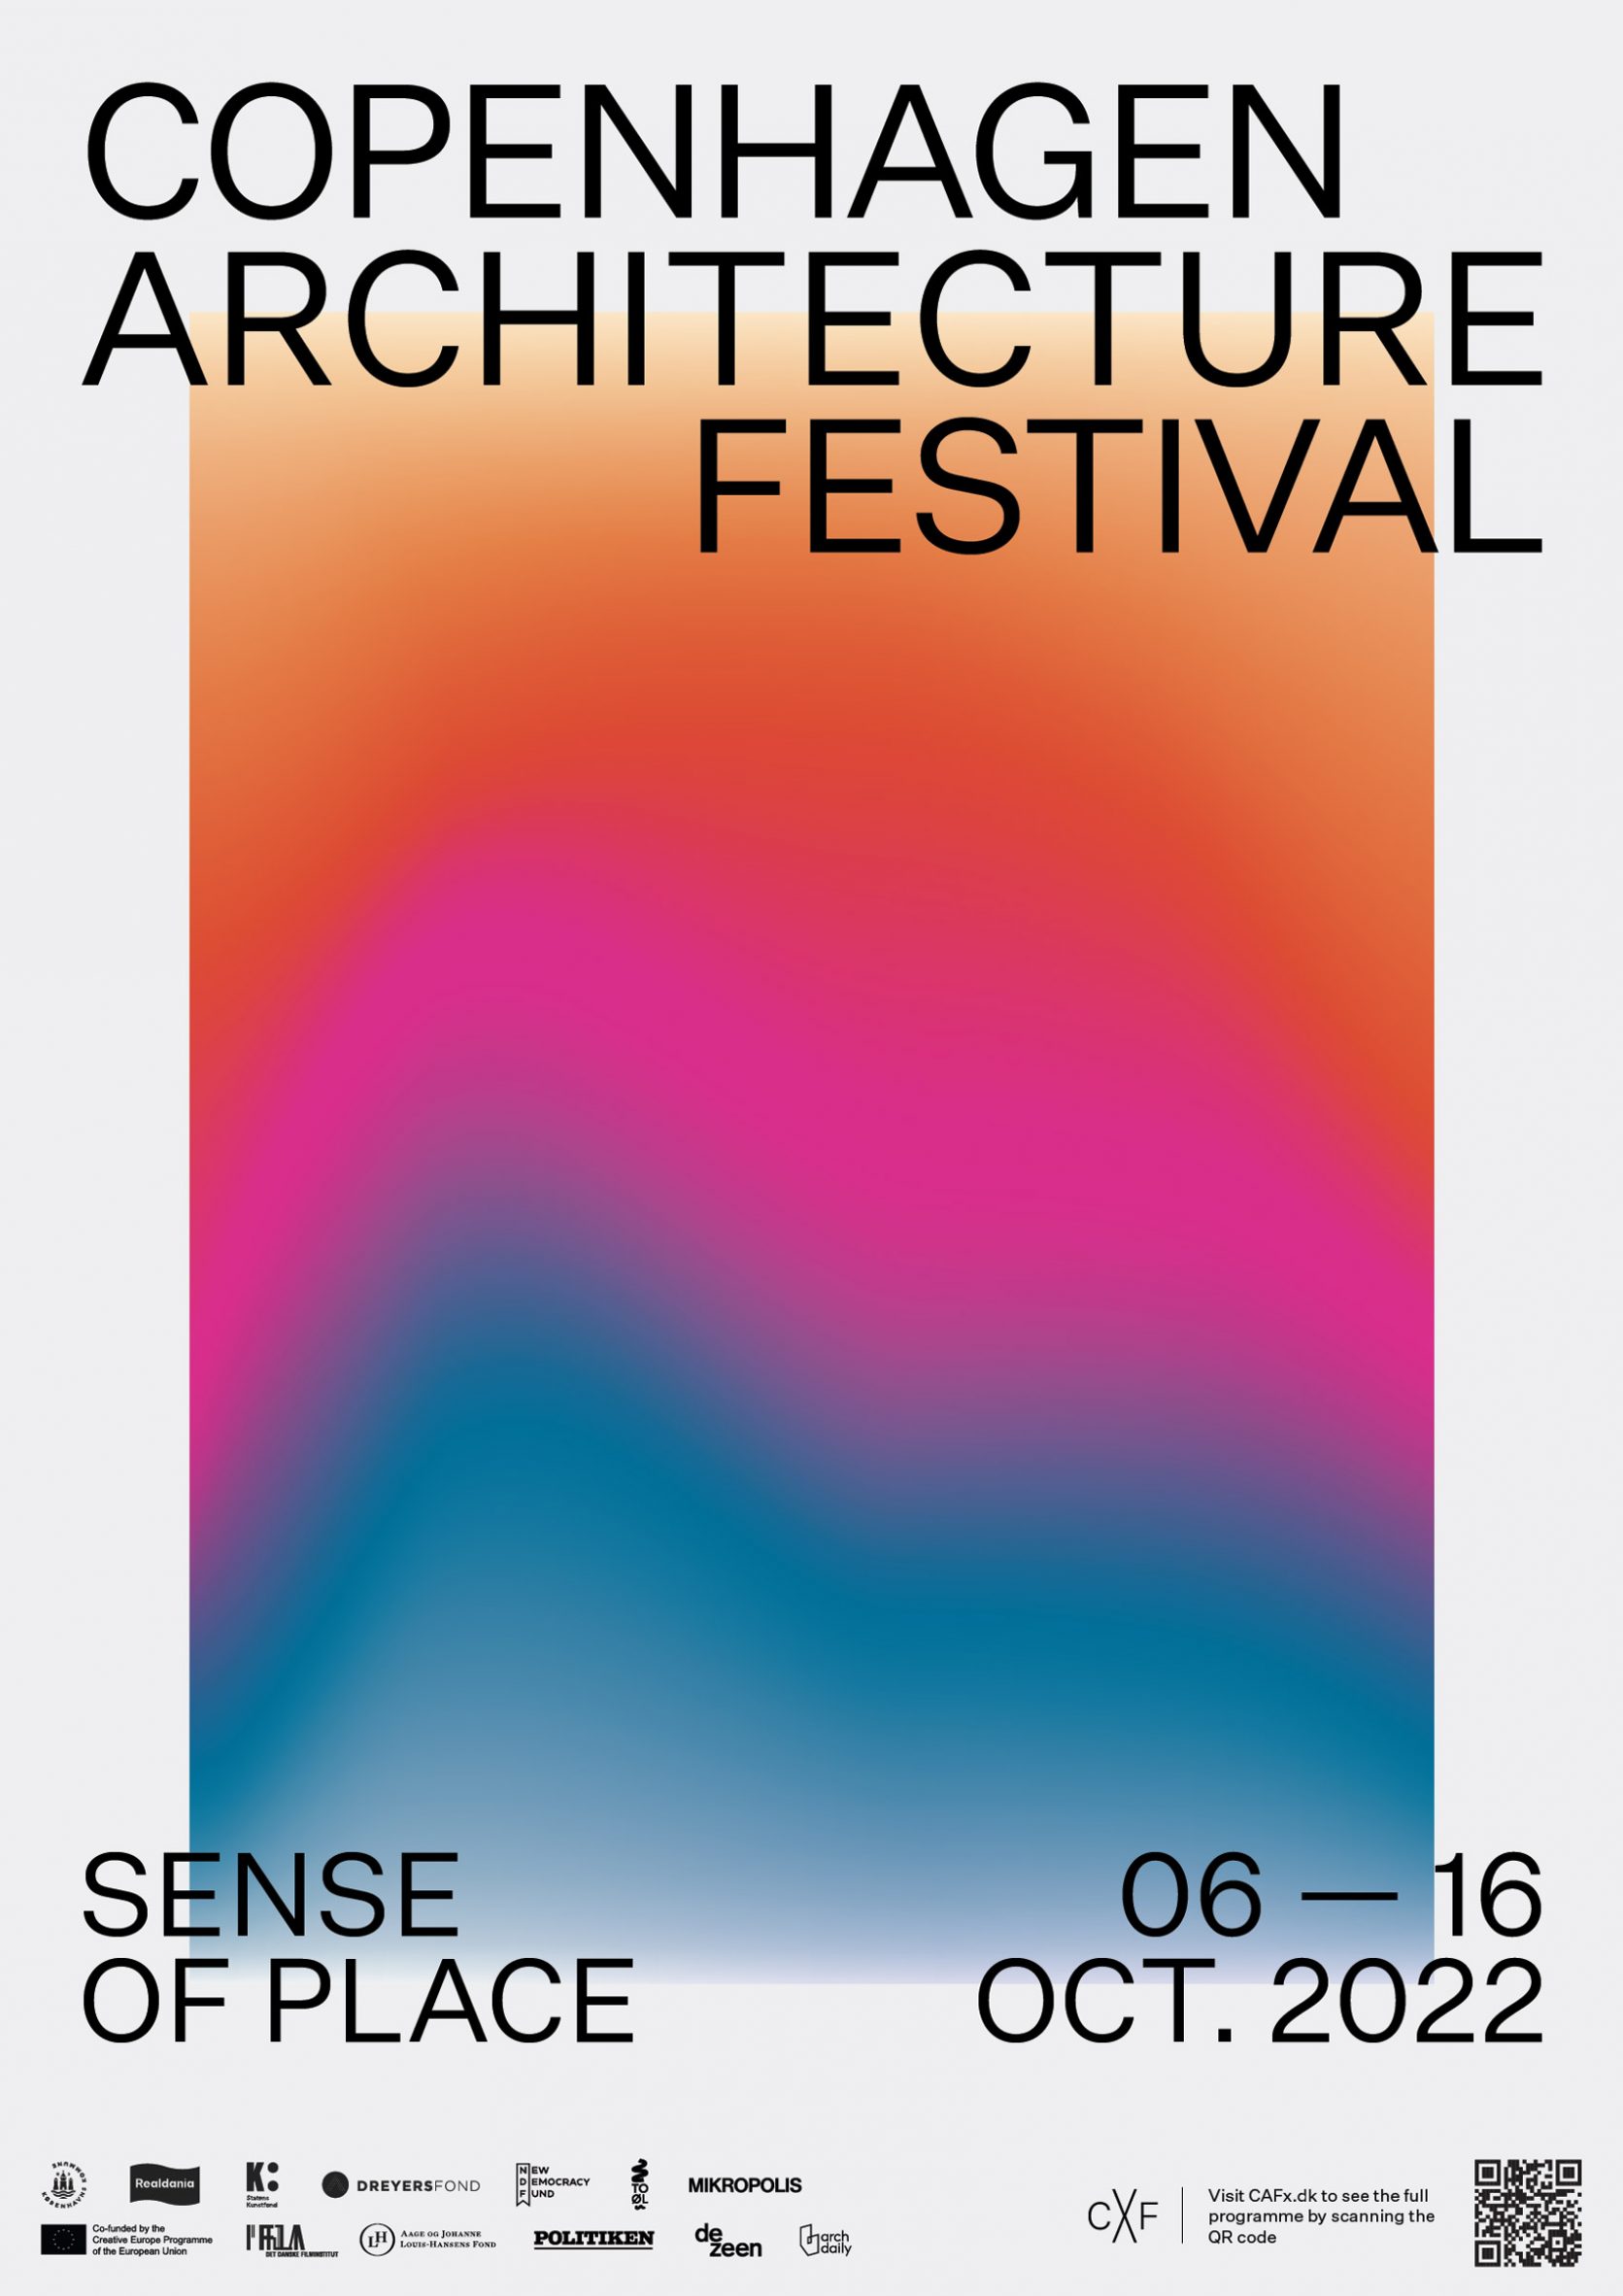 Copenhagen Architecture Festival 2022 poster